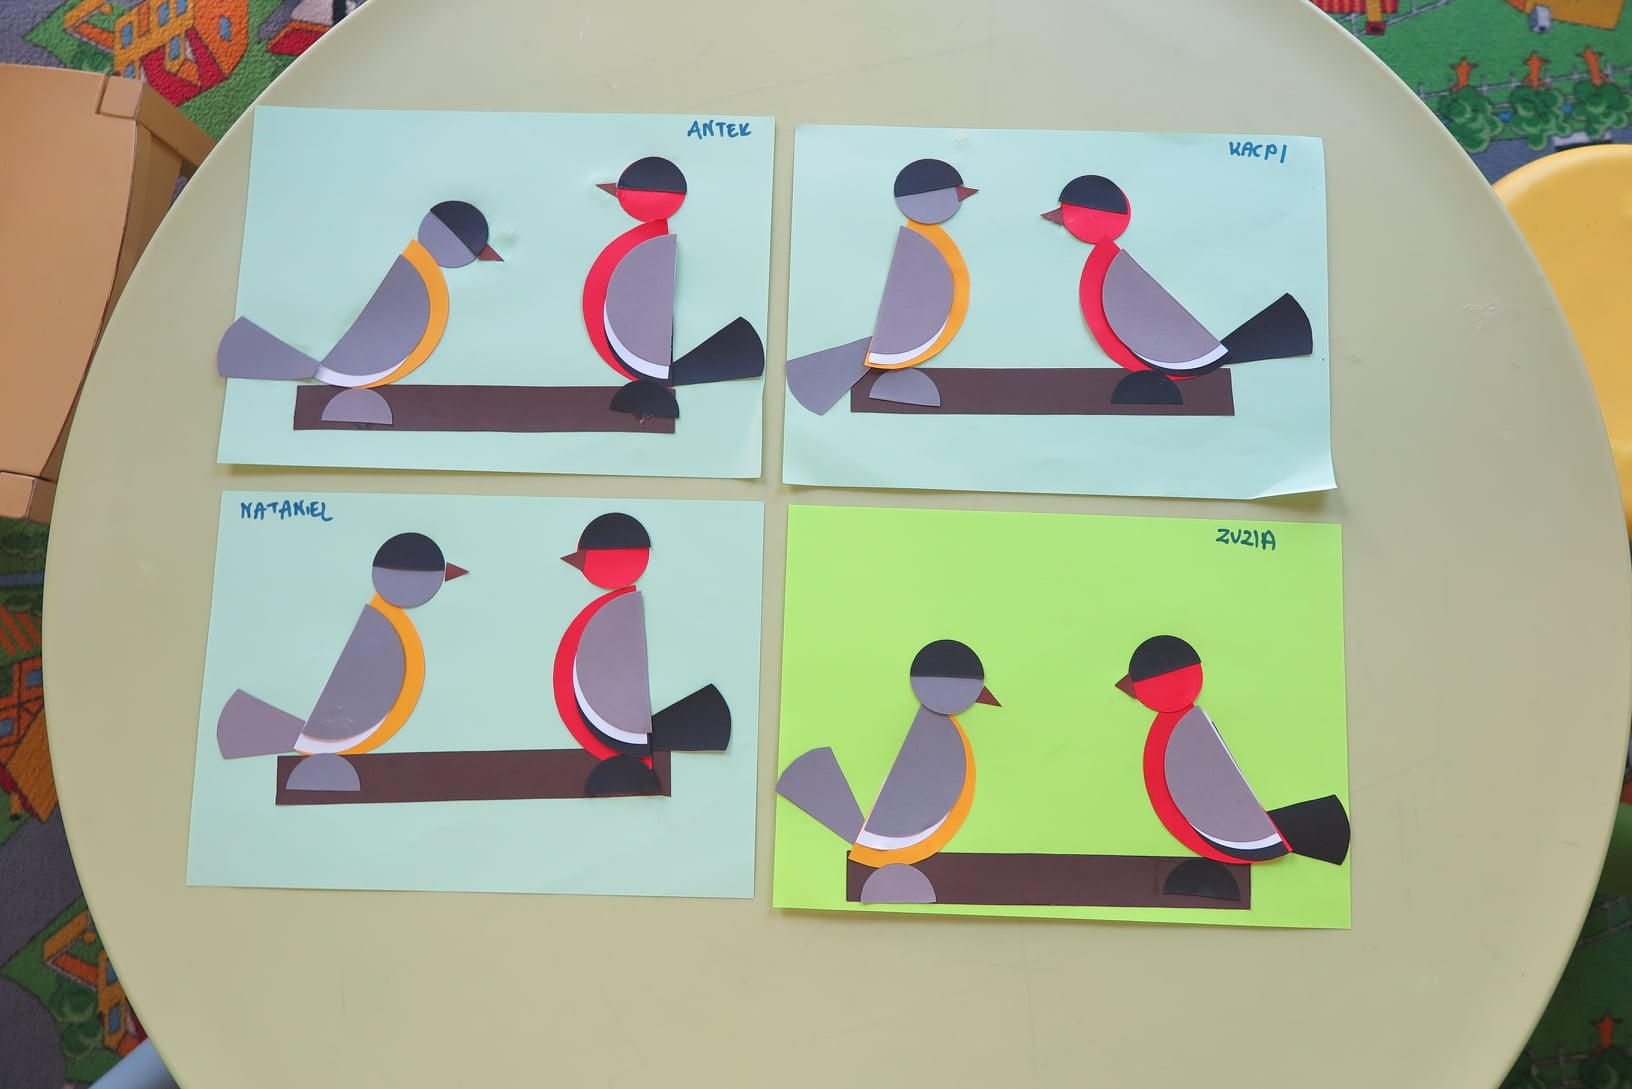 Na zdjęciu cztery kartki papieru. Na każdej wyklejone są dwa kolorowe ptaszki siedzące na gałęzi. Podpisy na każdej kartce: "Antek", "Kacpi", "Nataniel", "Zuzia".